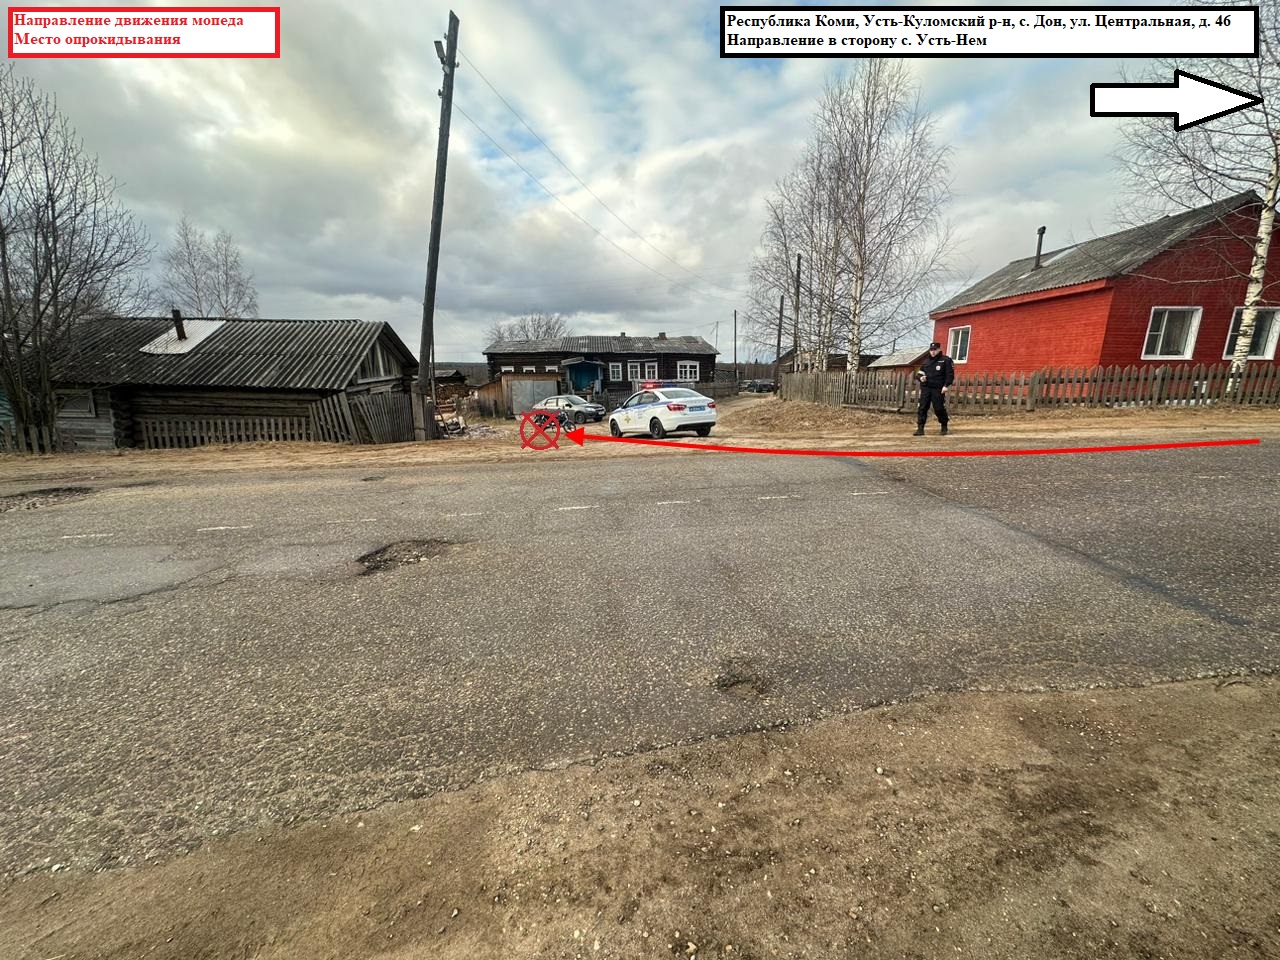 В Усть-Куломском районе подросток на мопеде опрокинулся на проезжую часть